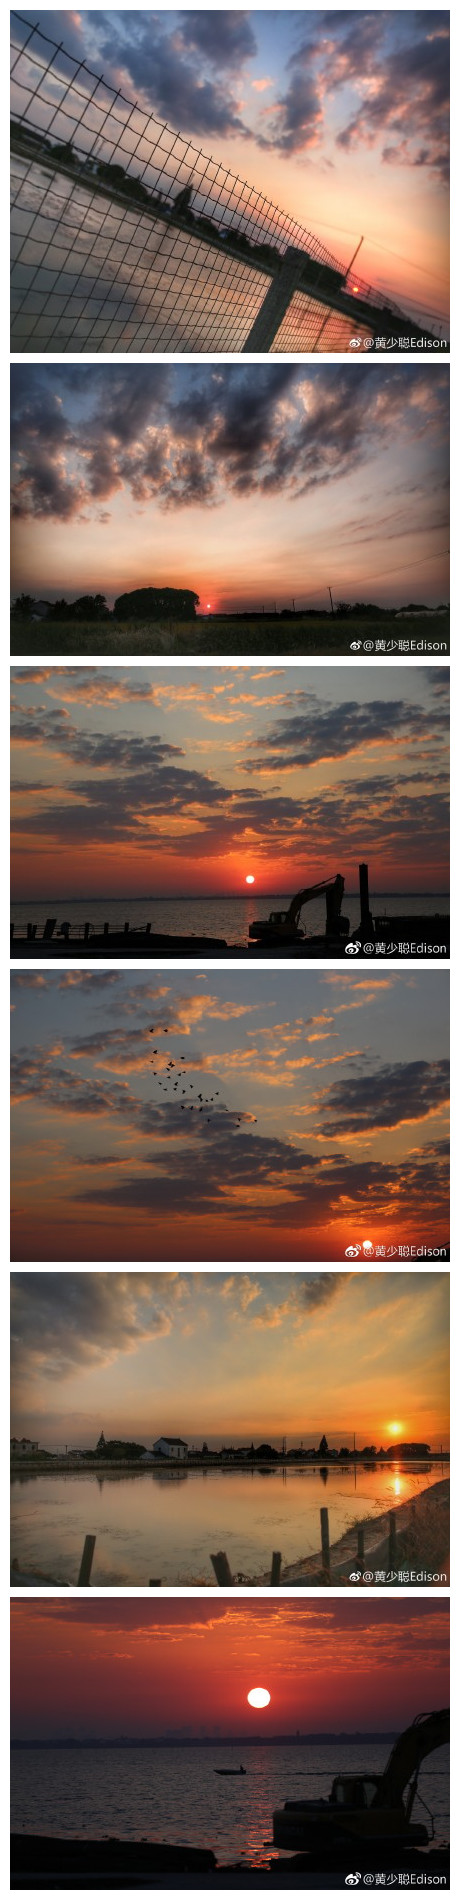 阳澄湖 的朝阳与夕阳，你能分辨出哪个是朝阳、哪个是夕阳吗？ ​